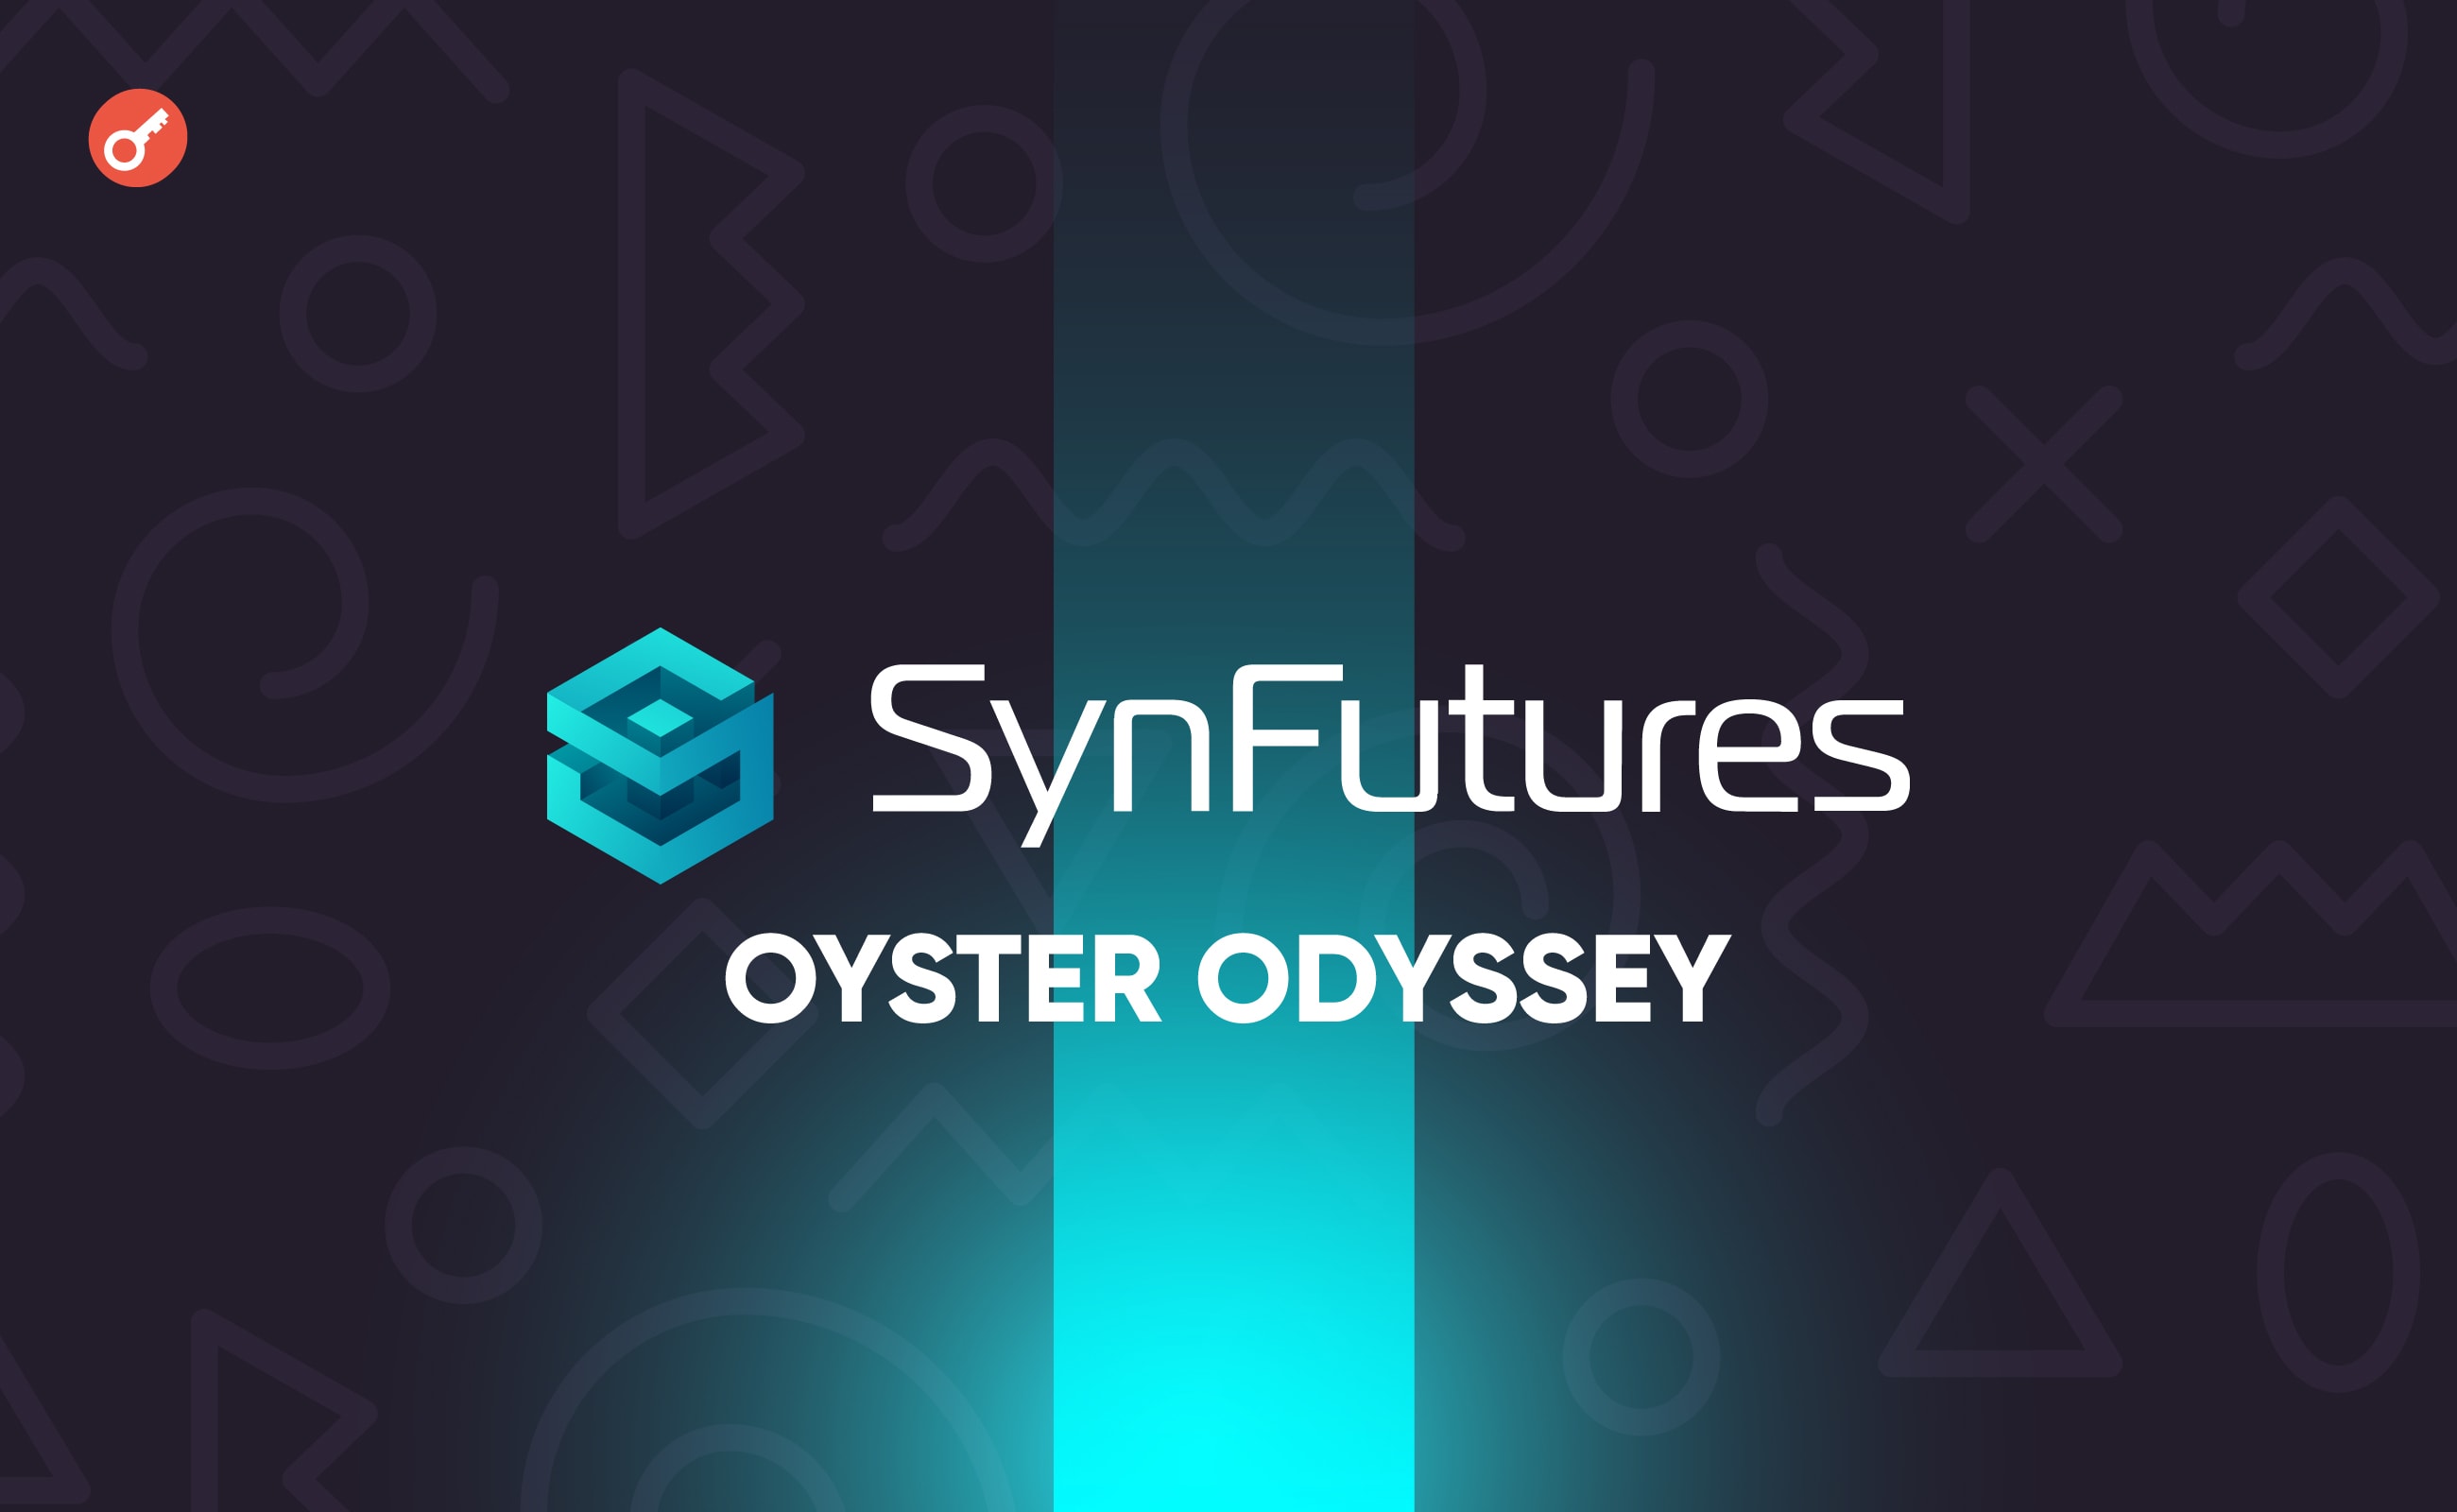 Платформа SynFutures V3 запустилась в сети Blast и представила программу Oyster Odyssey. Заглавный коллаж новости.